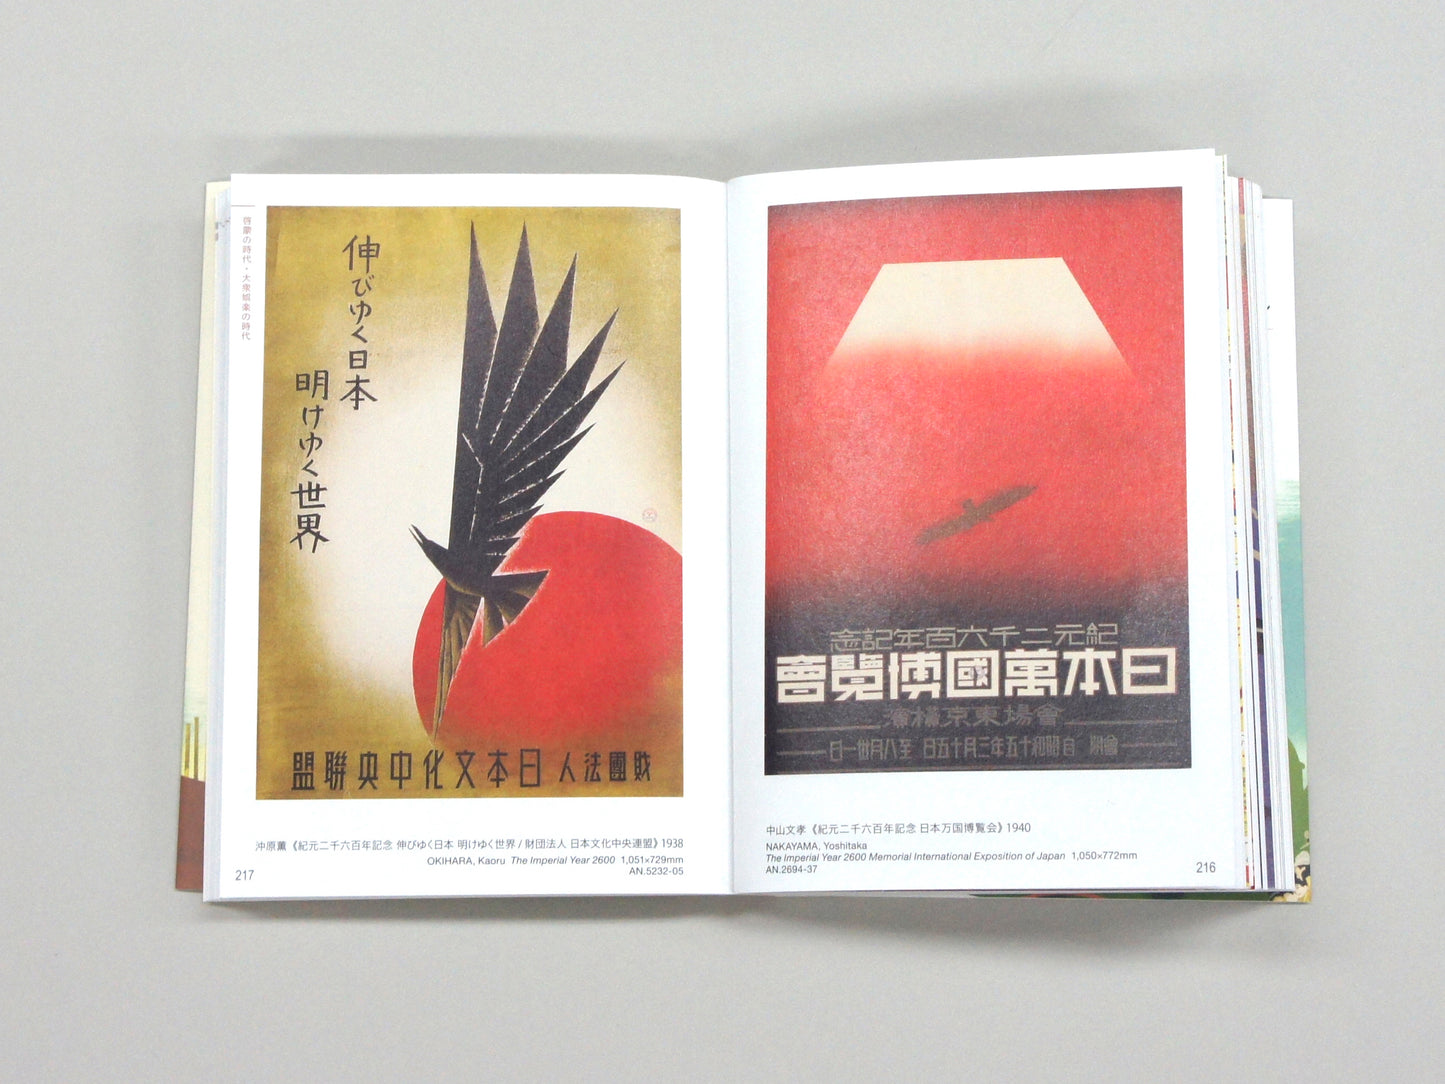 日本のポスター 京都工芸繊維大学美術工芸資料館デザインコレクション3 Modern Japanese Posters Museum and Archives, Kyoto Institute of Technology Design Collection 3